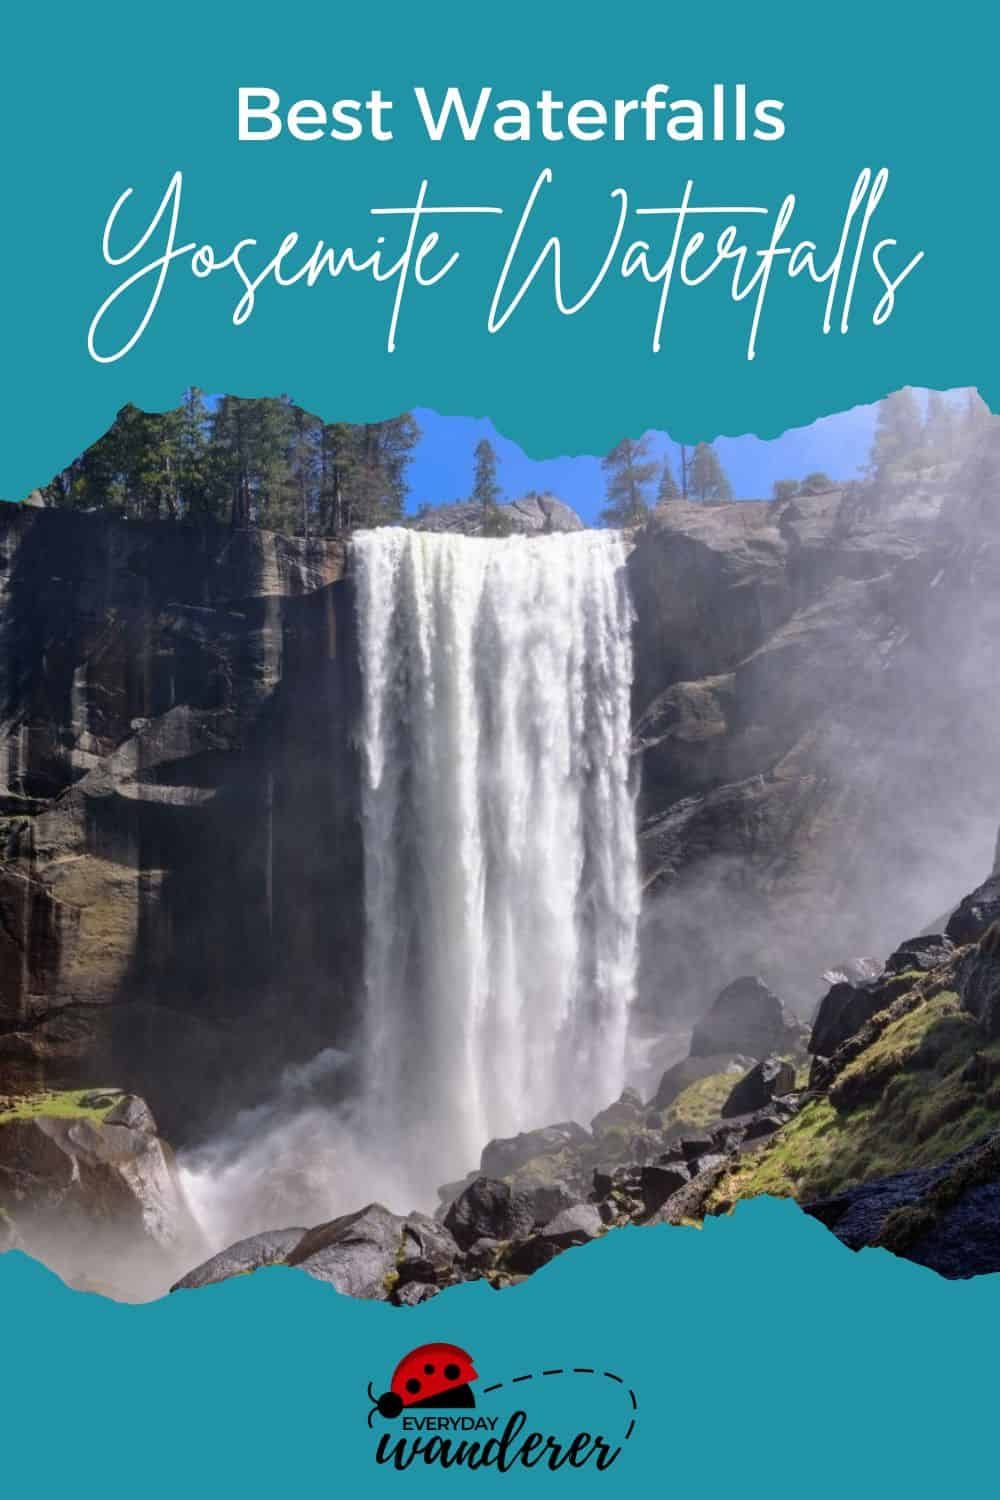 Yosemite Waterfalls - New Pin 1 - JPG